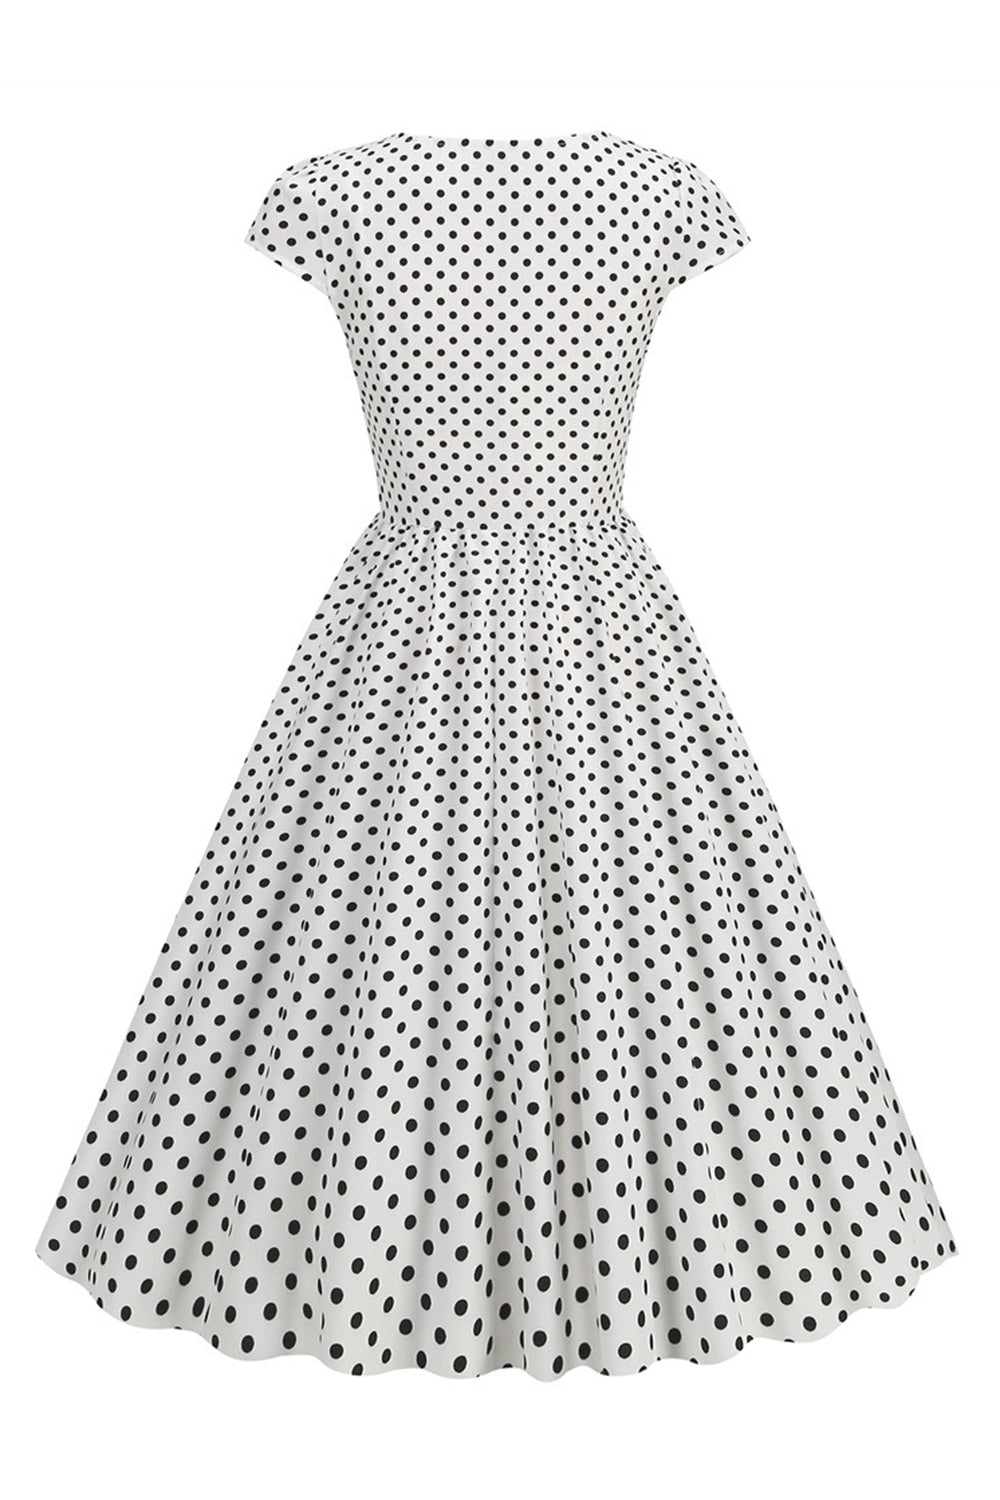 ZAPAKA Women Vintage Dress A Line Polka Dots Swing 1950s Dress